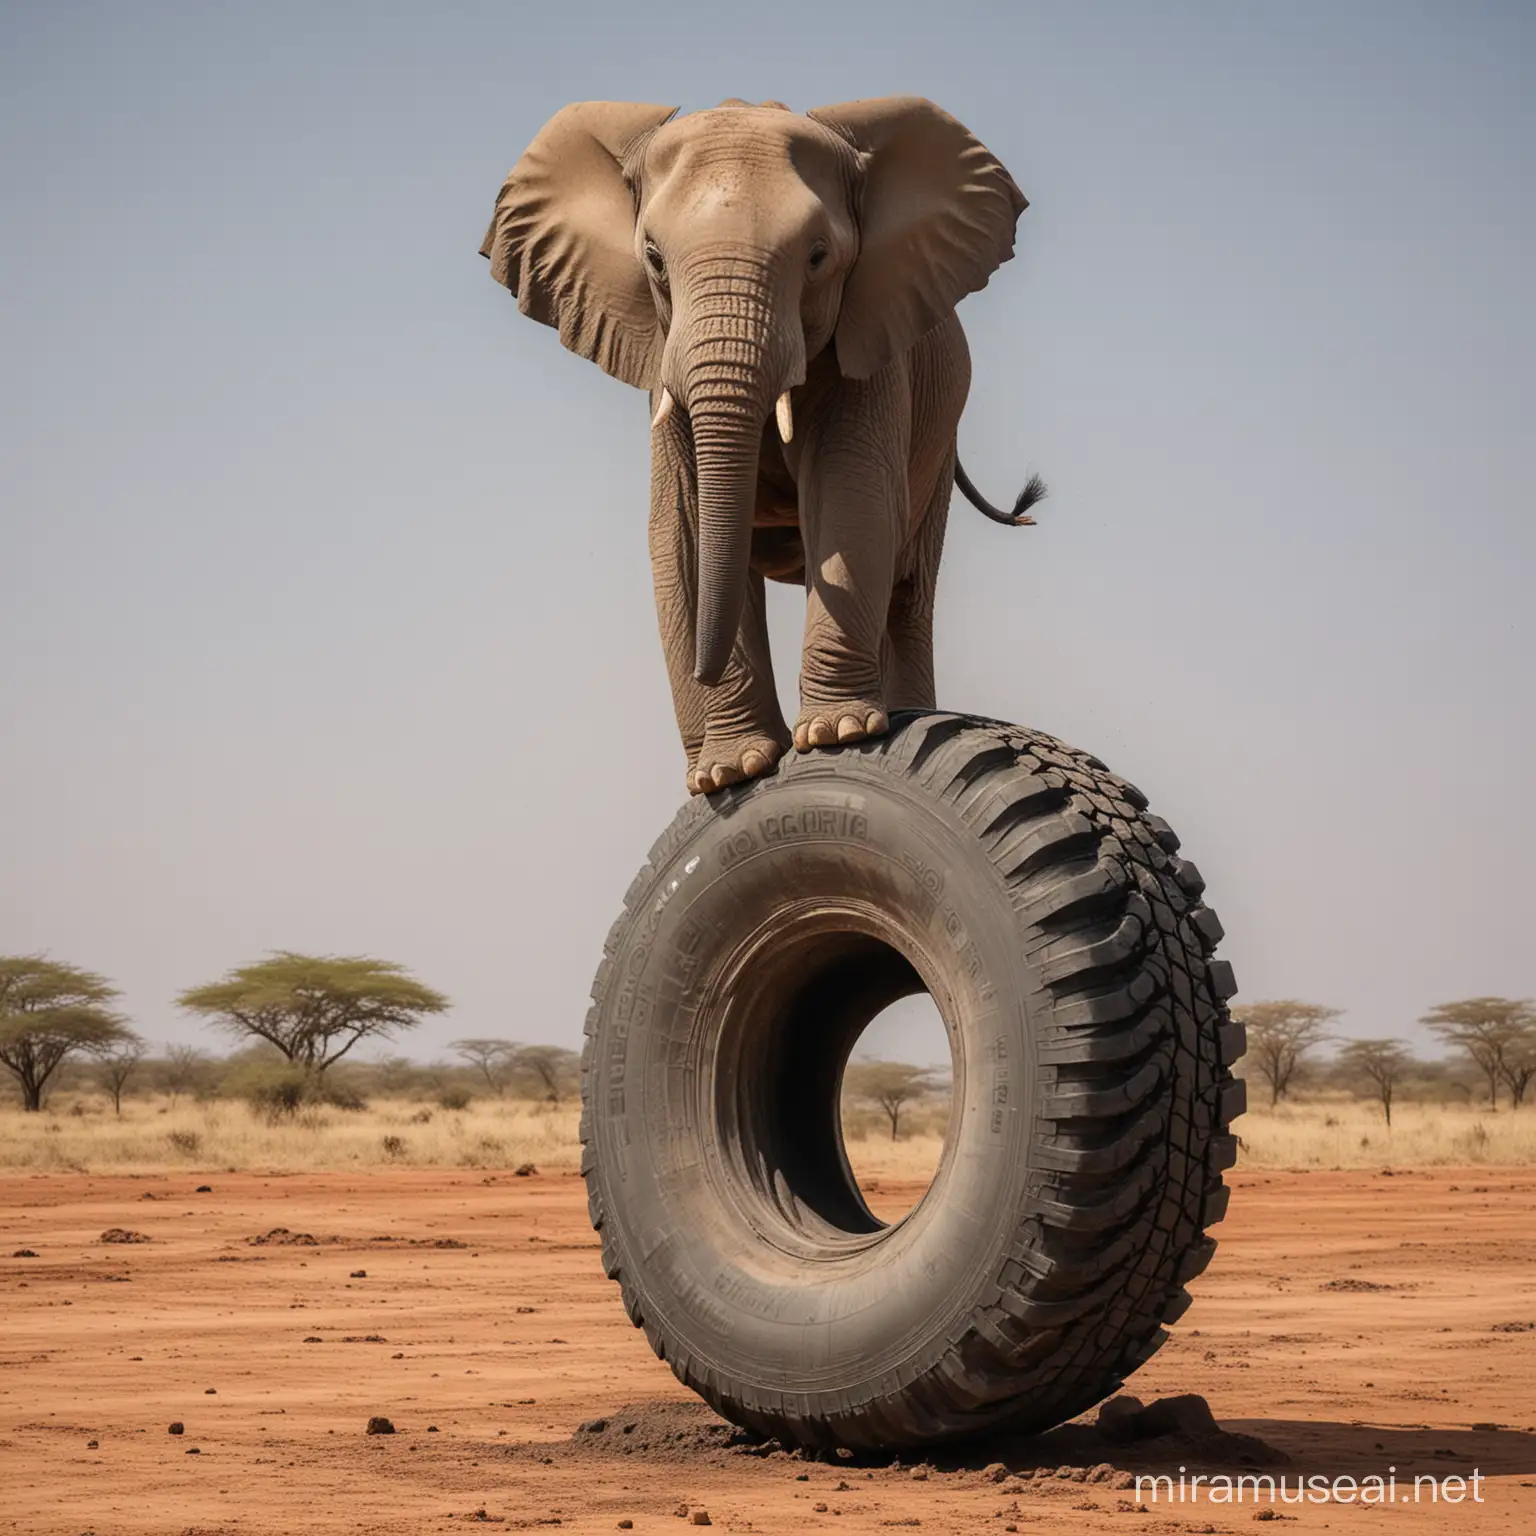 Ein Elefant balanciert auf einem hochkant stehende Autoreifen, der sichtbar seine Luft über ein Loch verliert - dass die Luft austritt sieht man richtig. und es fällt dem Elefanten schon schwer noch darauf zu balancieren